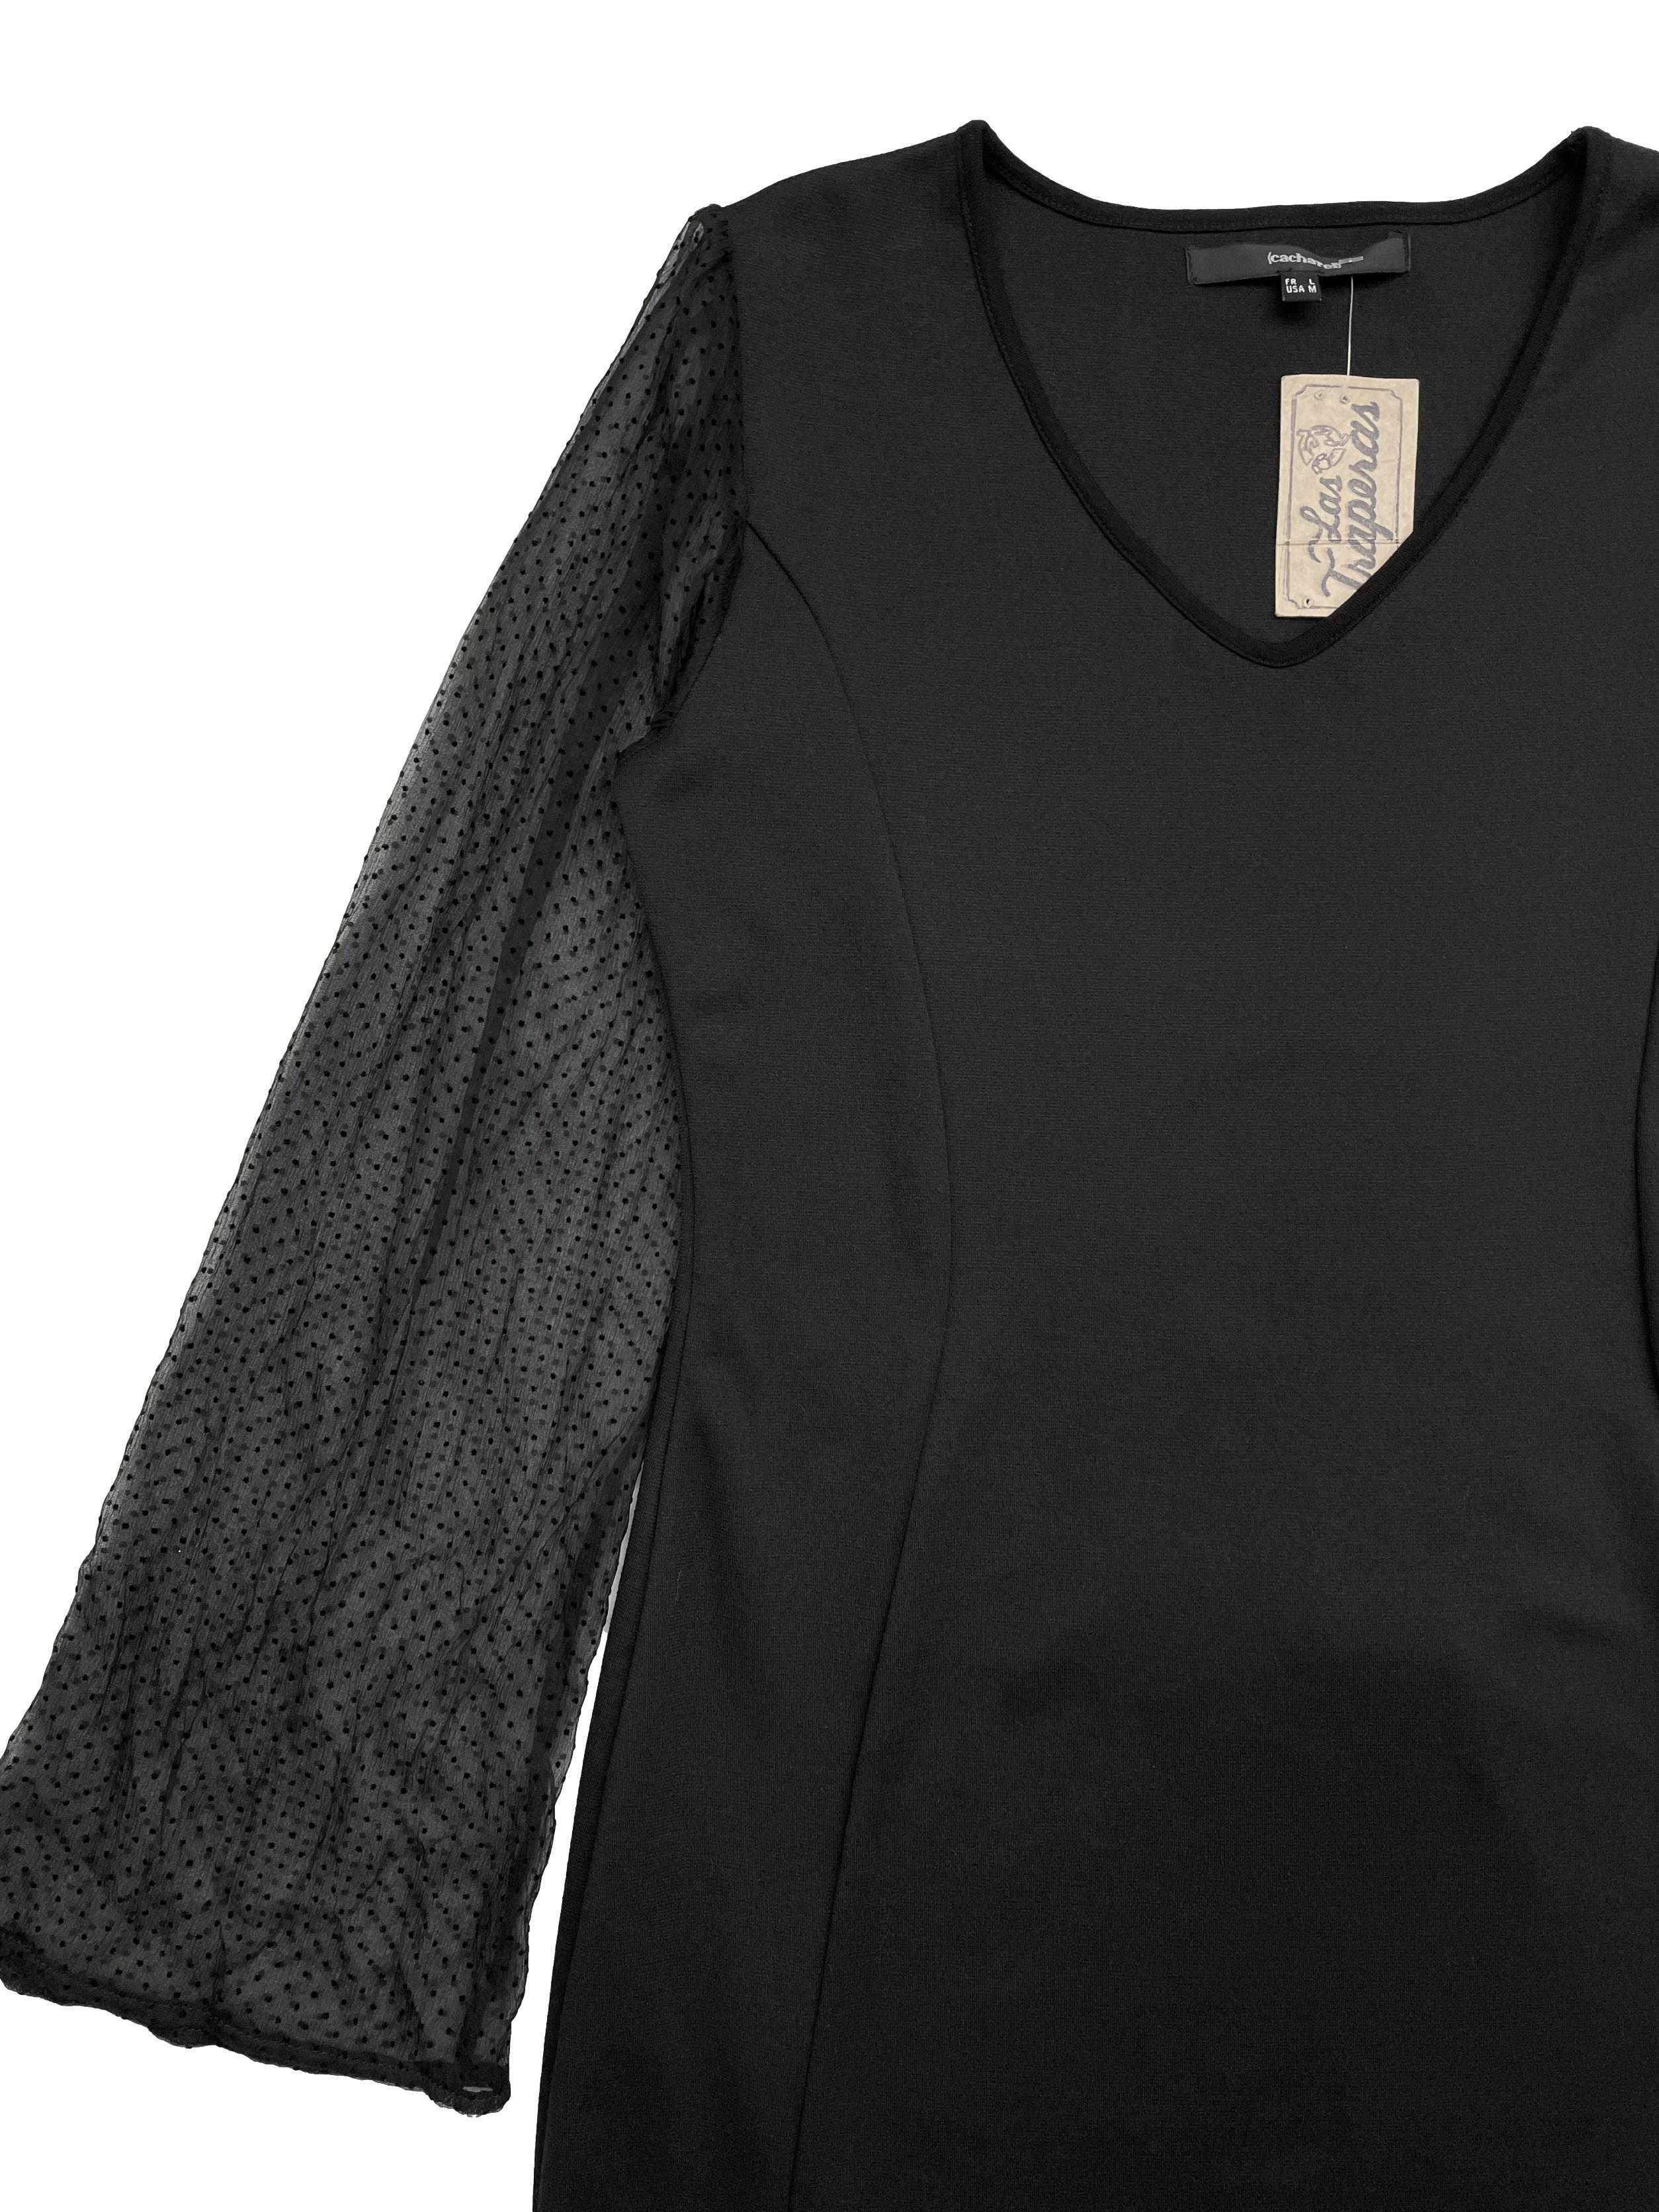 Vestido negro stretch de corte favorecedor, con aberturas laterales y mangas de gasa con puntitos. Busto 90 cm sin estirar, Largo 80cm.